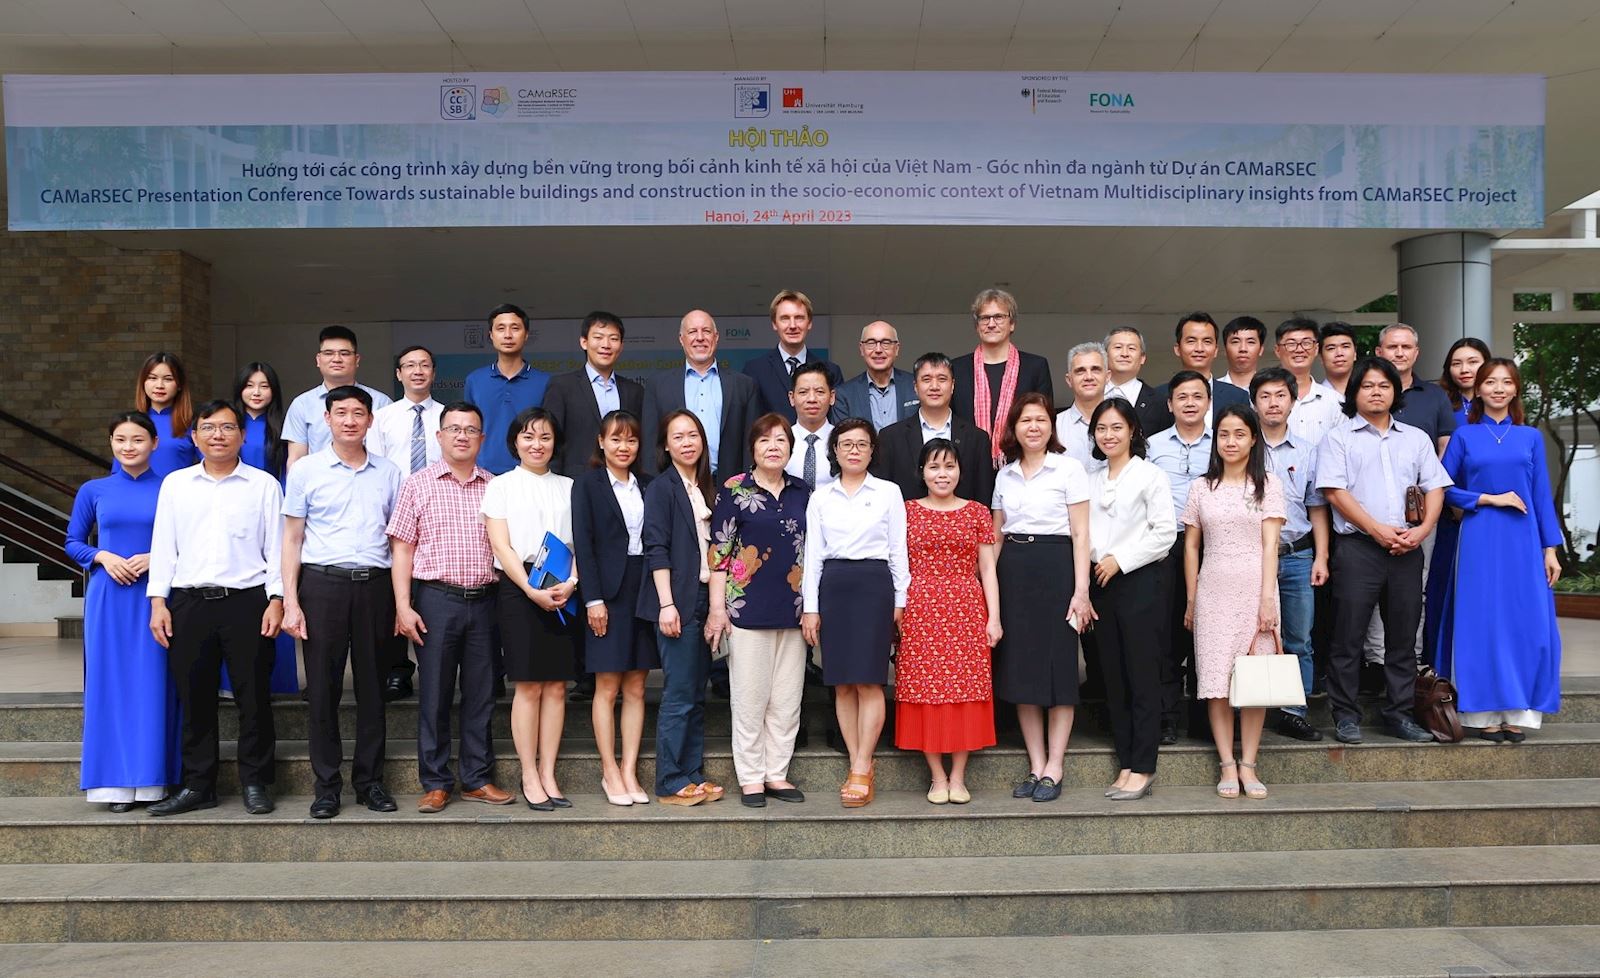 Hội thảo Dự án CAMaRSEC: Hướng tới các công trình xây dựng bền vững trong bối cảnh kinh tế xã hội của Việt Nam – Góc nhìn đa ngành từ Dự án CAMaRSEC